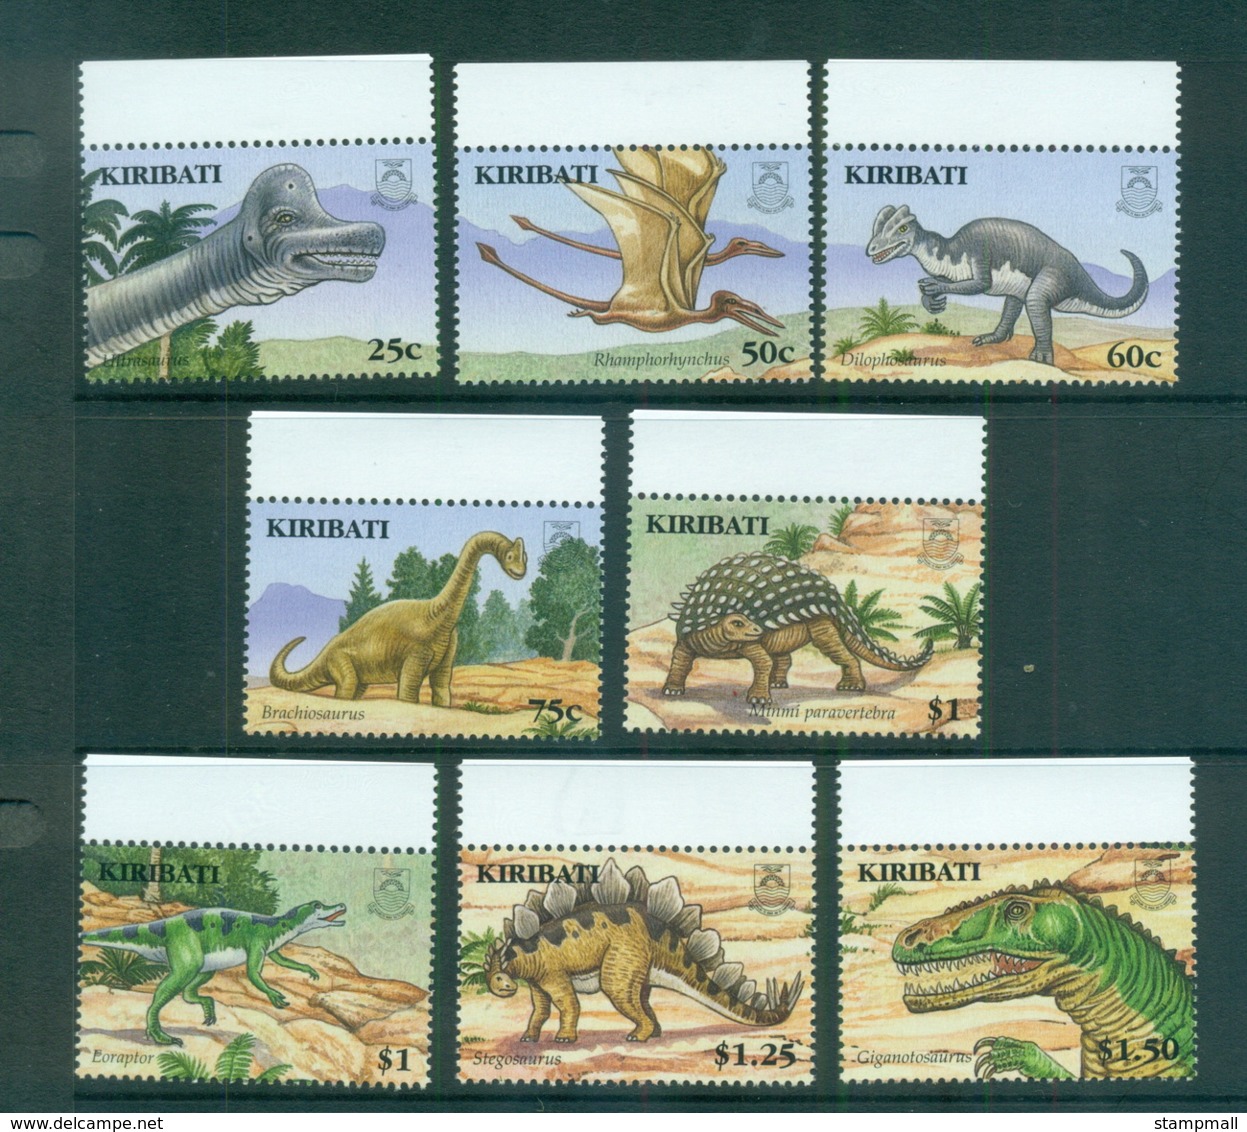 Kiribati 2006 Prehistoric Animals, Dinosaurs MUH Lot70851 - Kiribati (1979-...)